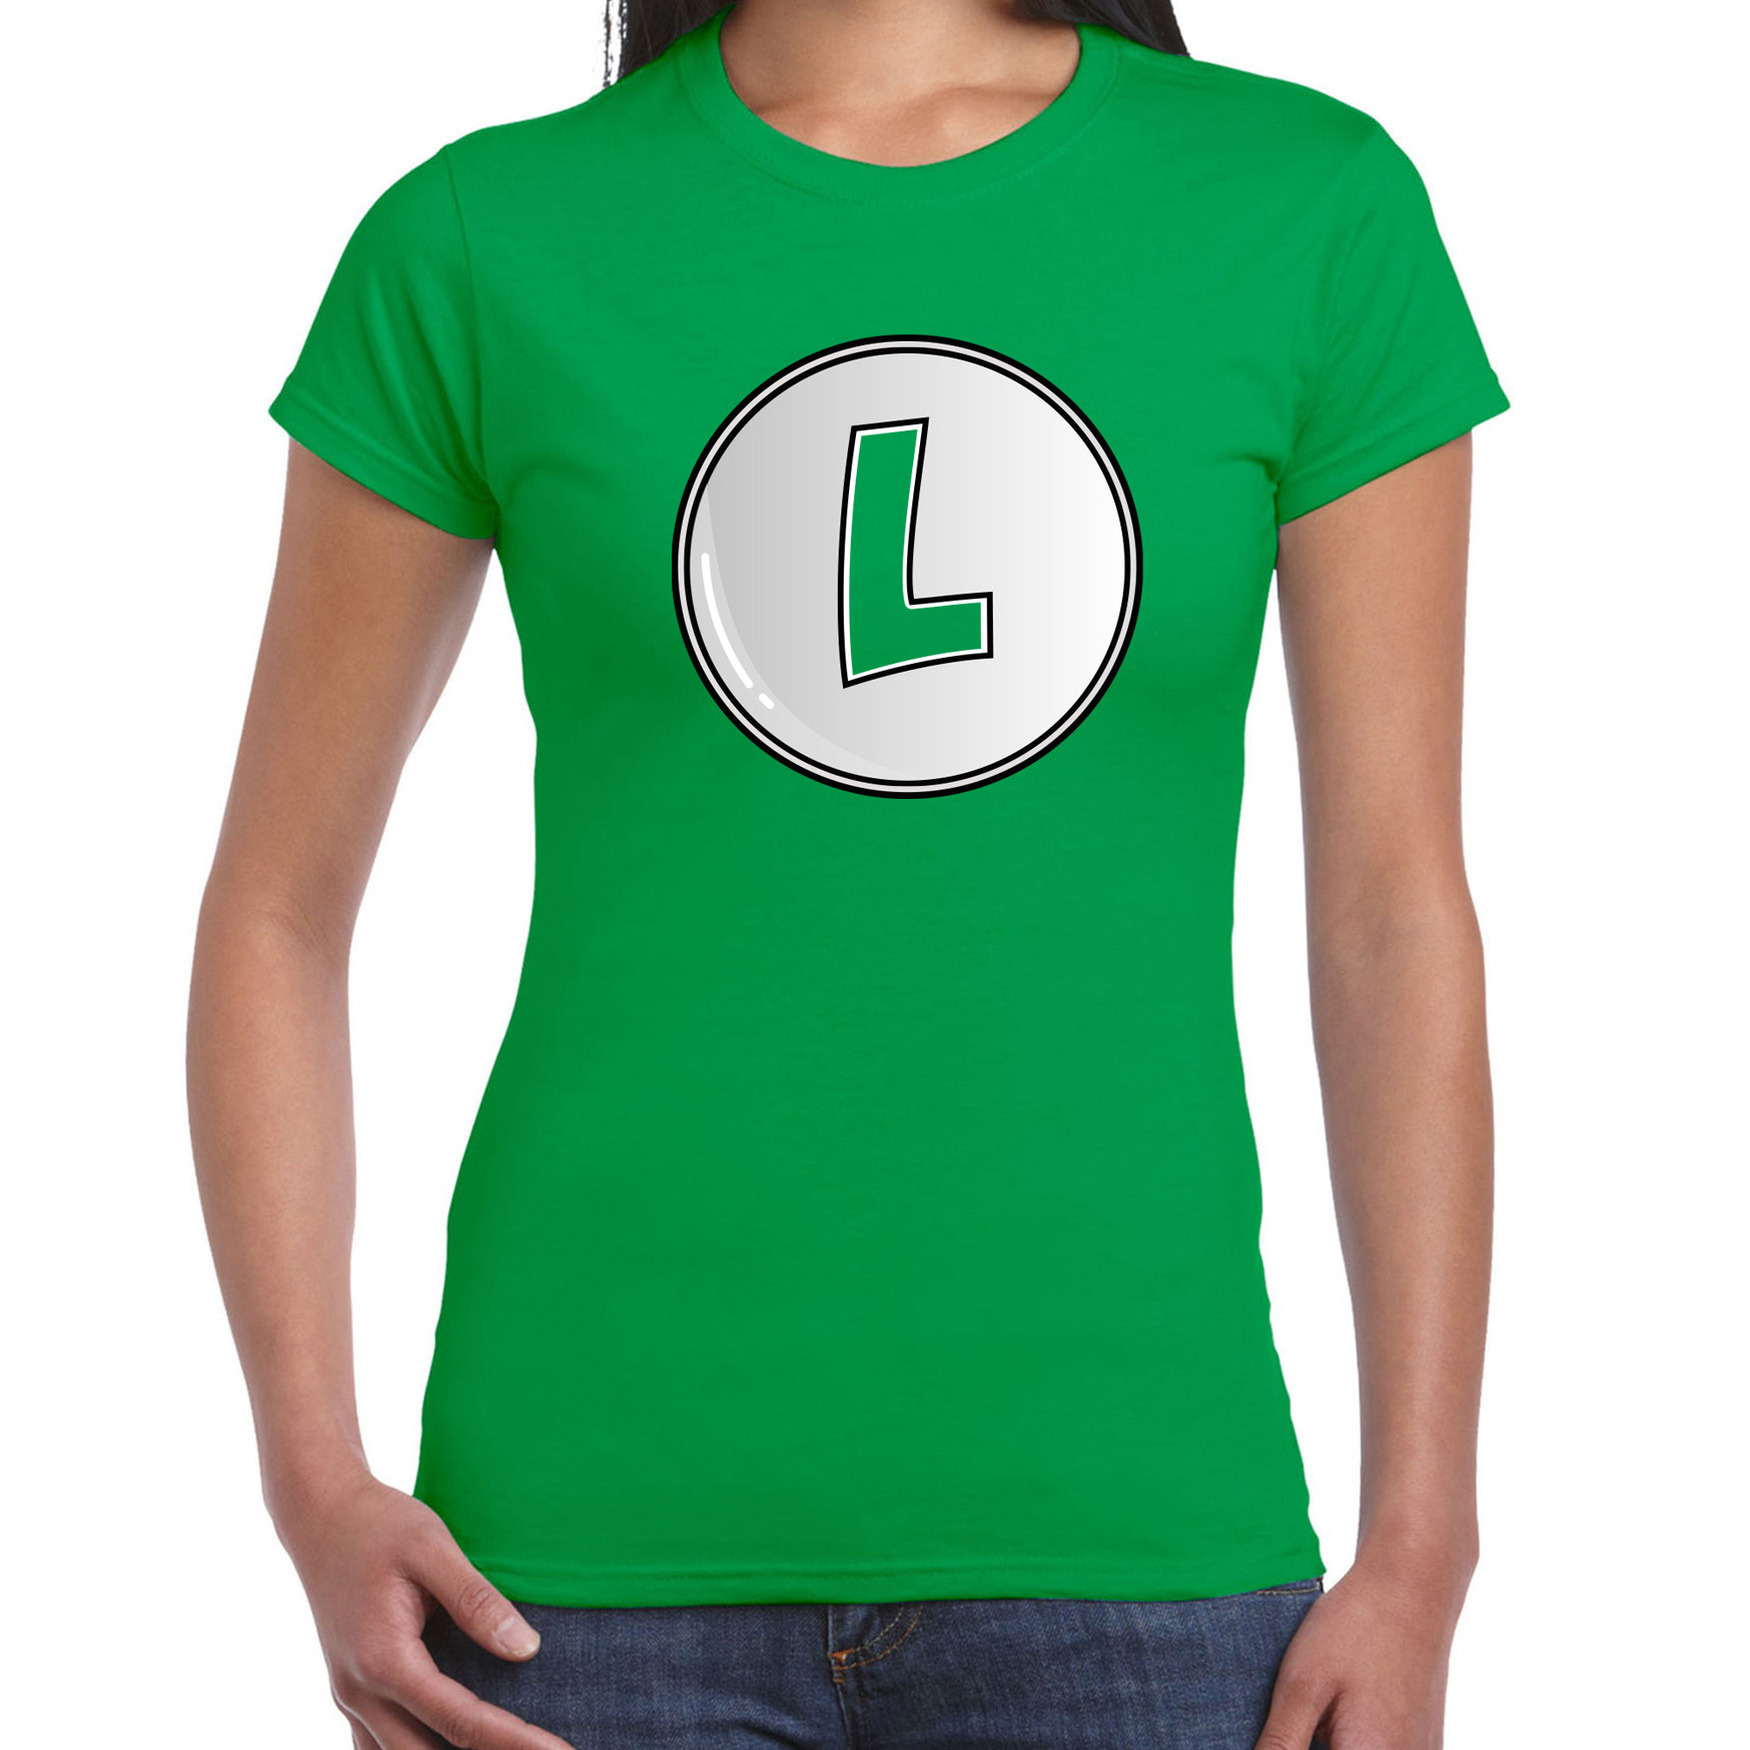 Game verkleed t-shirt voor dames loodgieter Luigi groen carnaval-themafeest kostuum